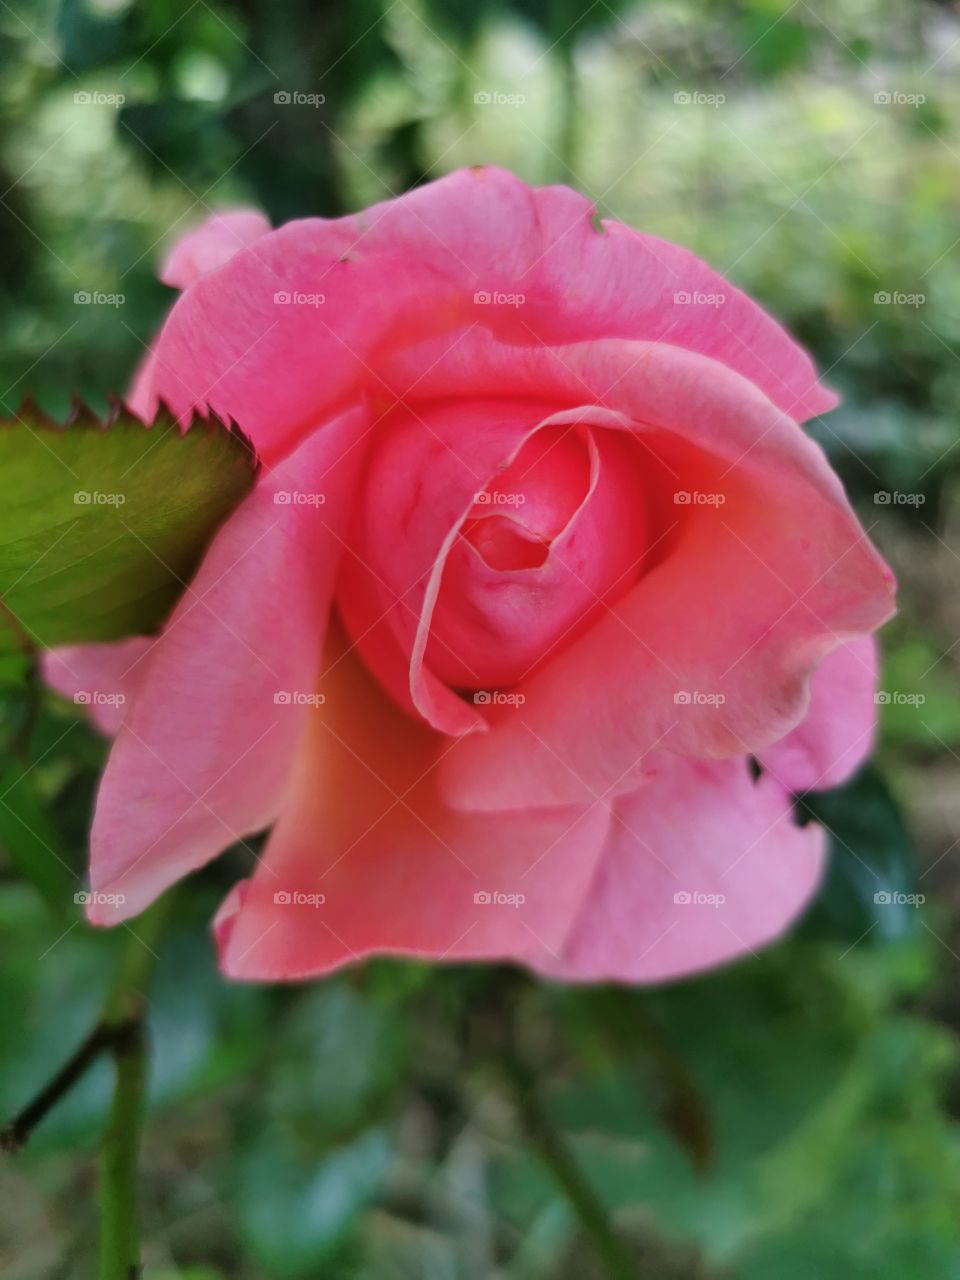 Vivid pink rose